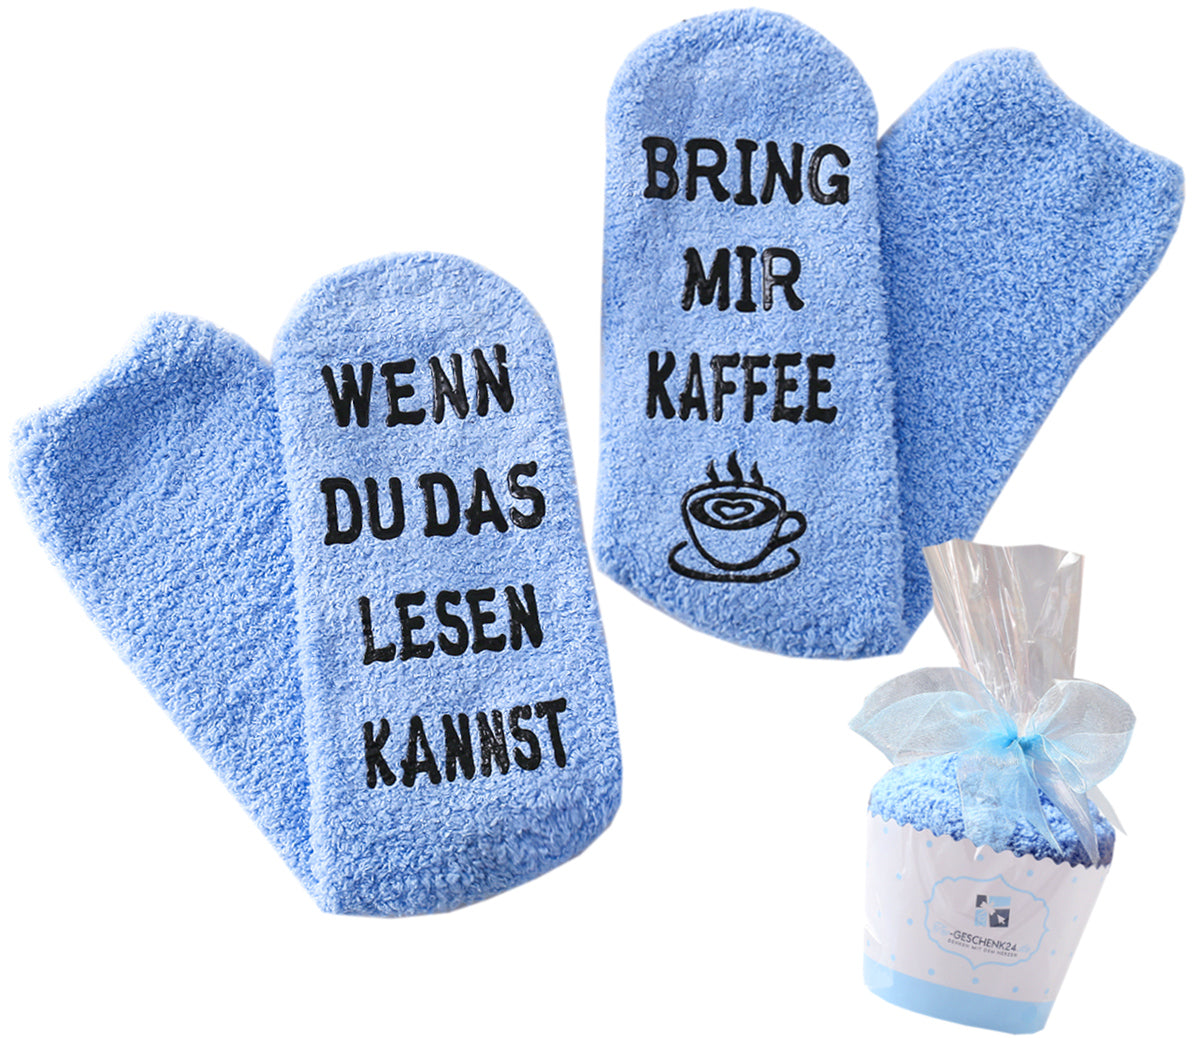 Cupcake Socken, Geschenk für Frauen, Kuschelsocken mit Spruch Wenn du das lesen kannst, bring mir Kaffee,  Geburtstagsgeschenk, 36-43